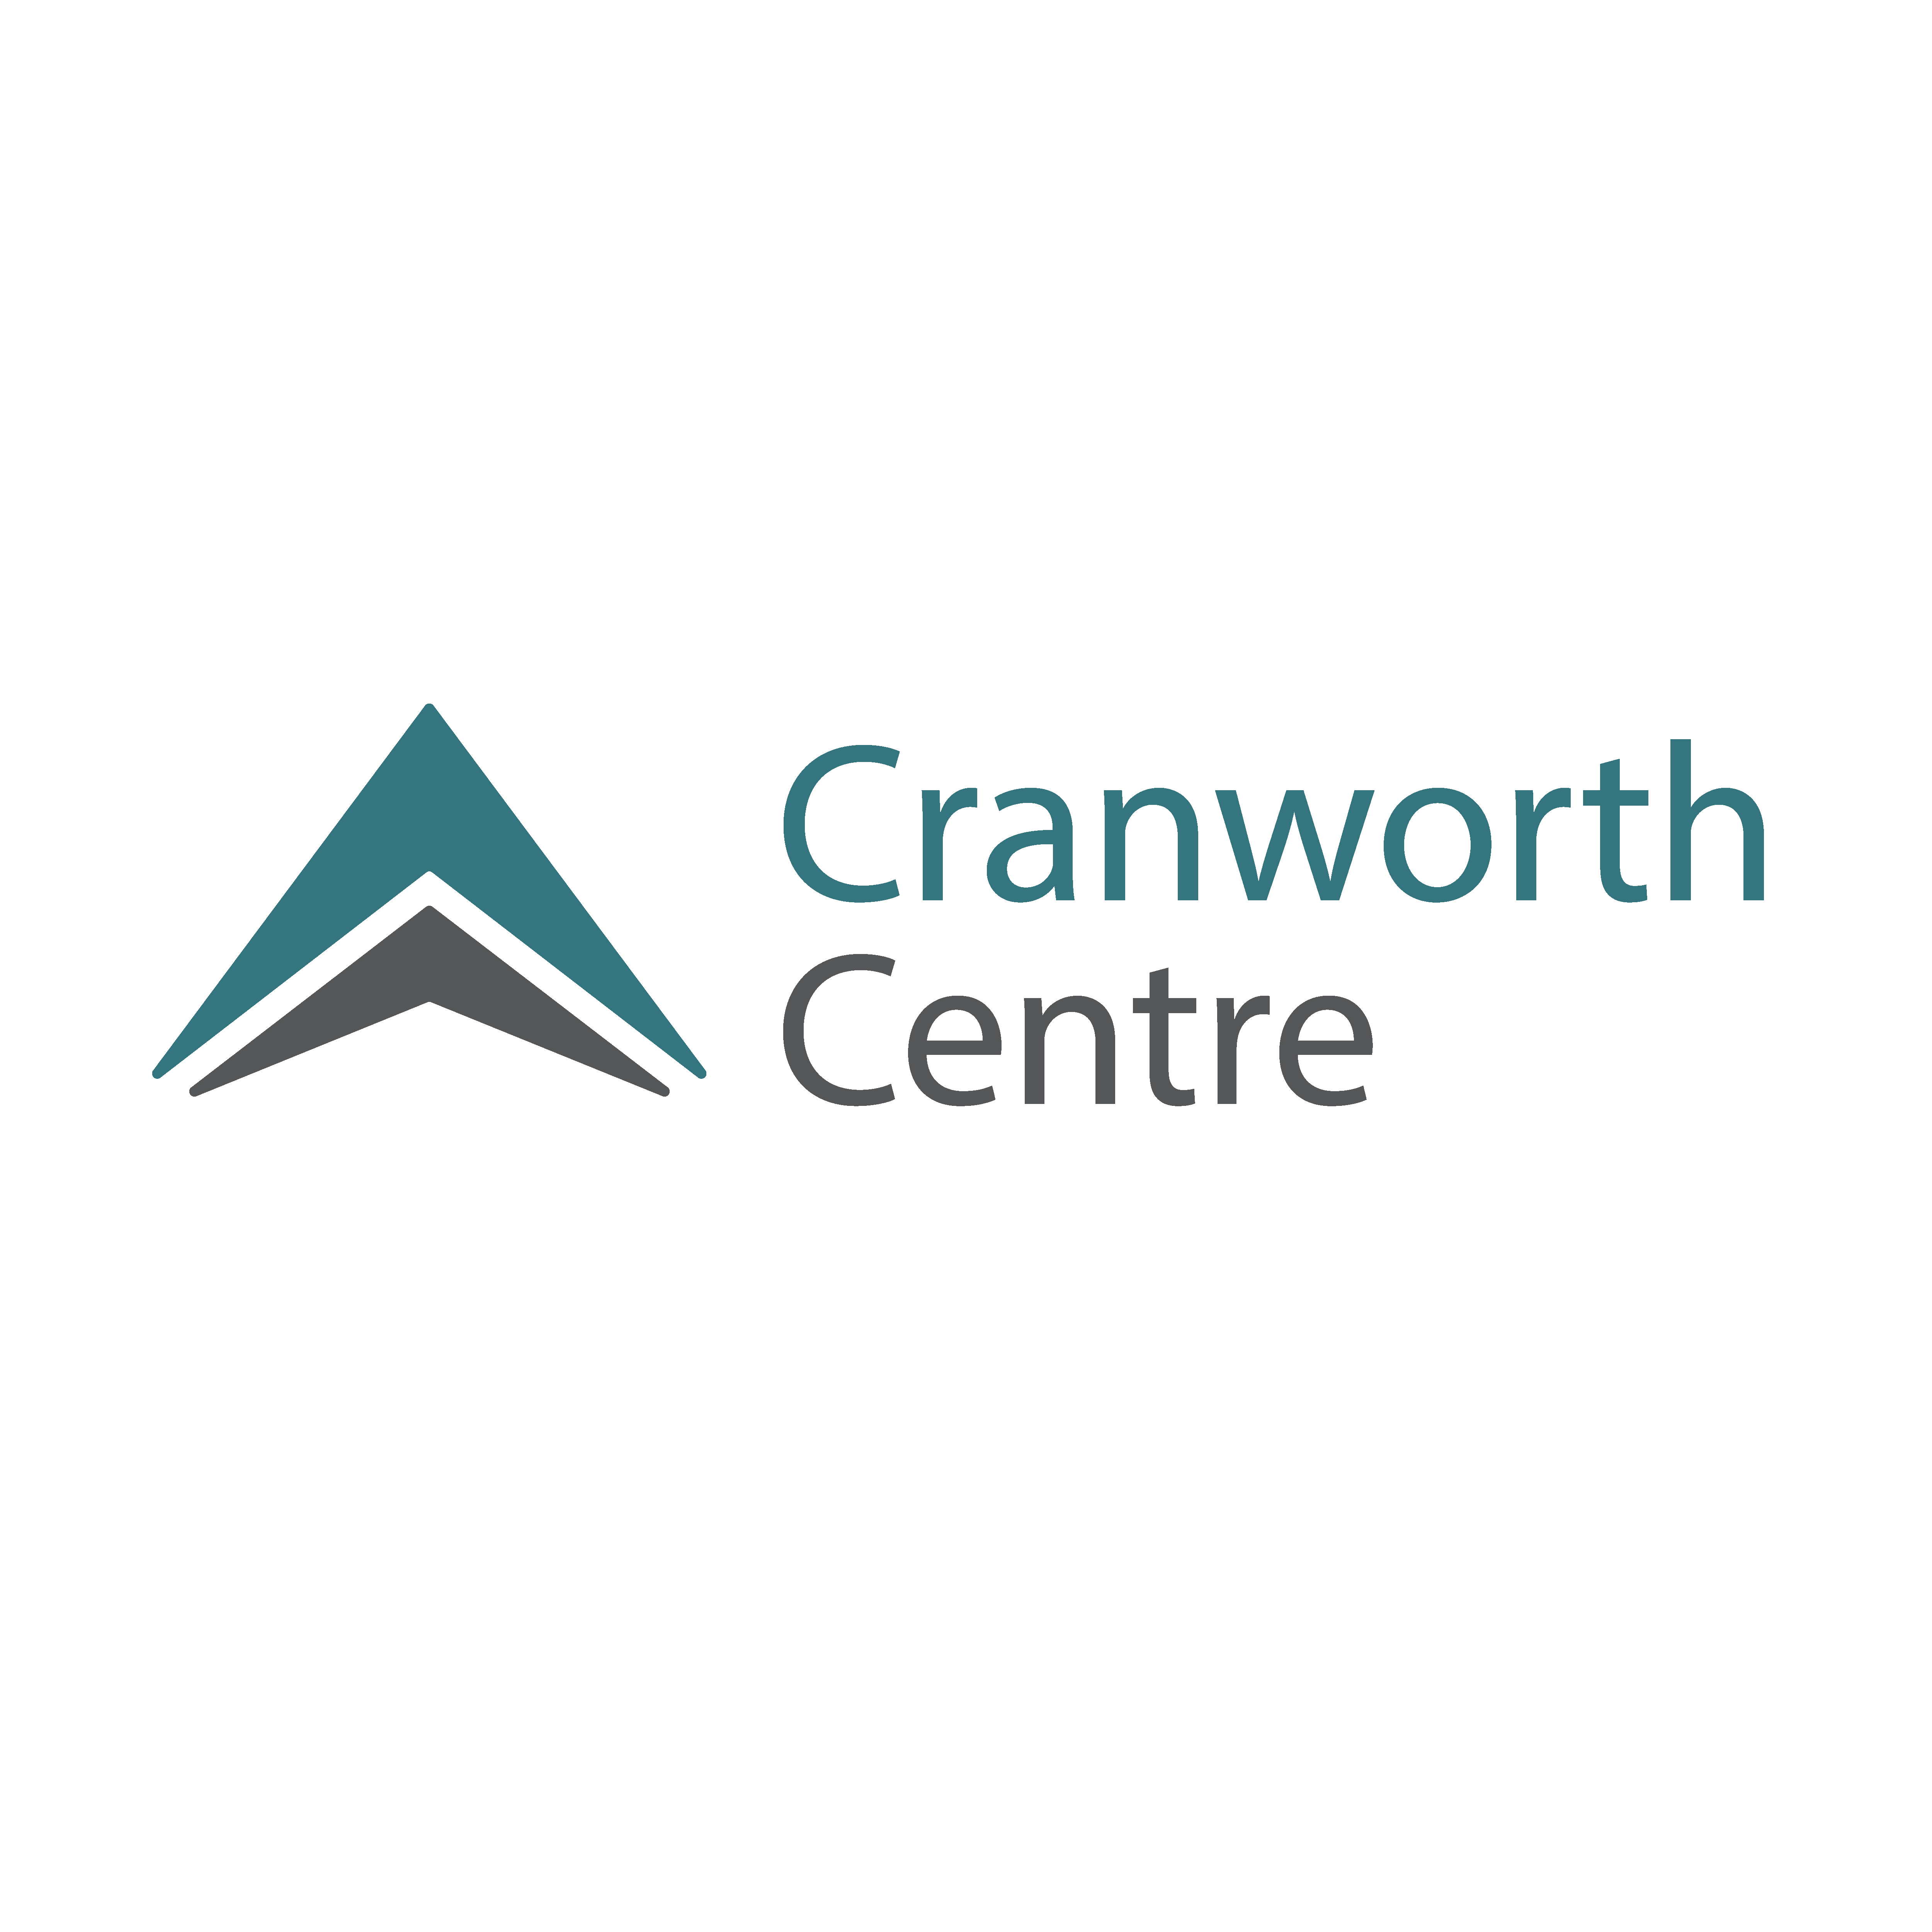 Cranworth Road Centre